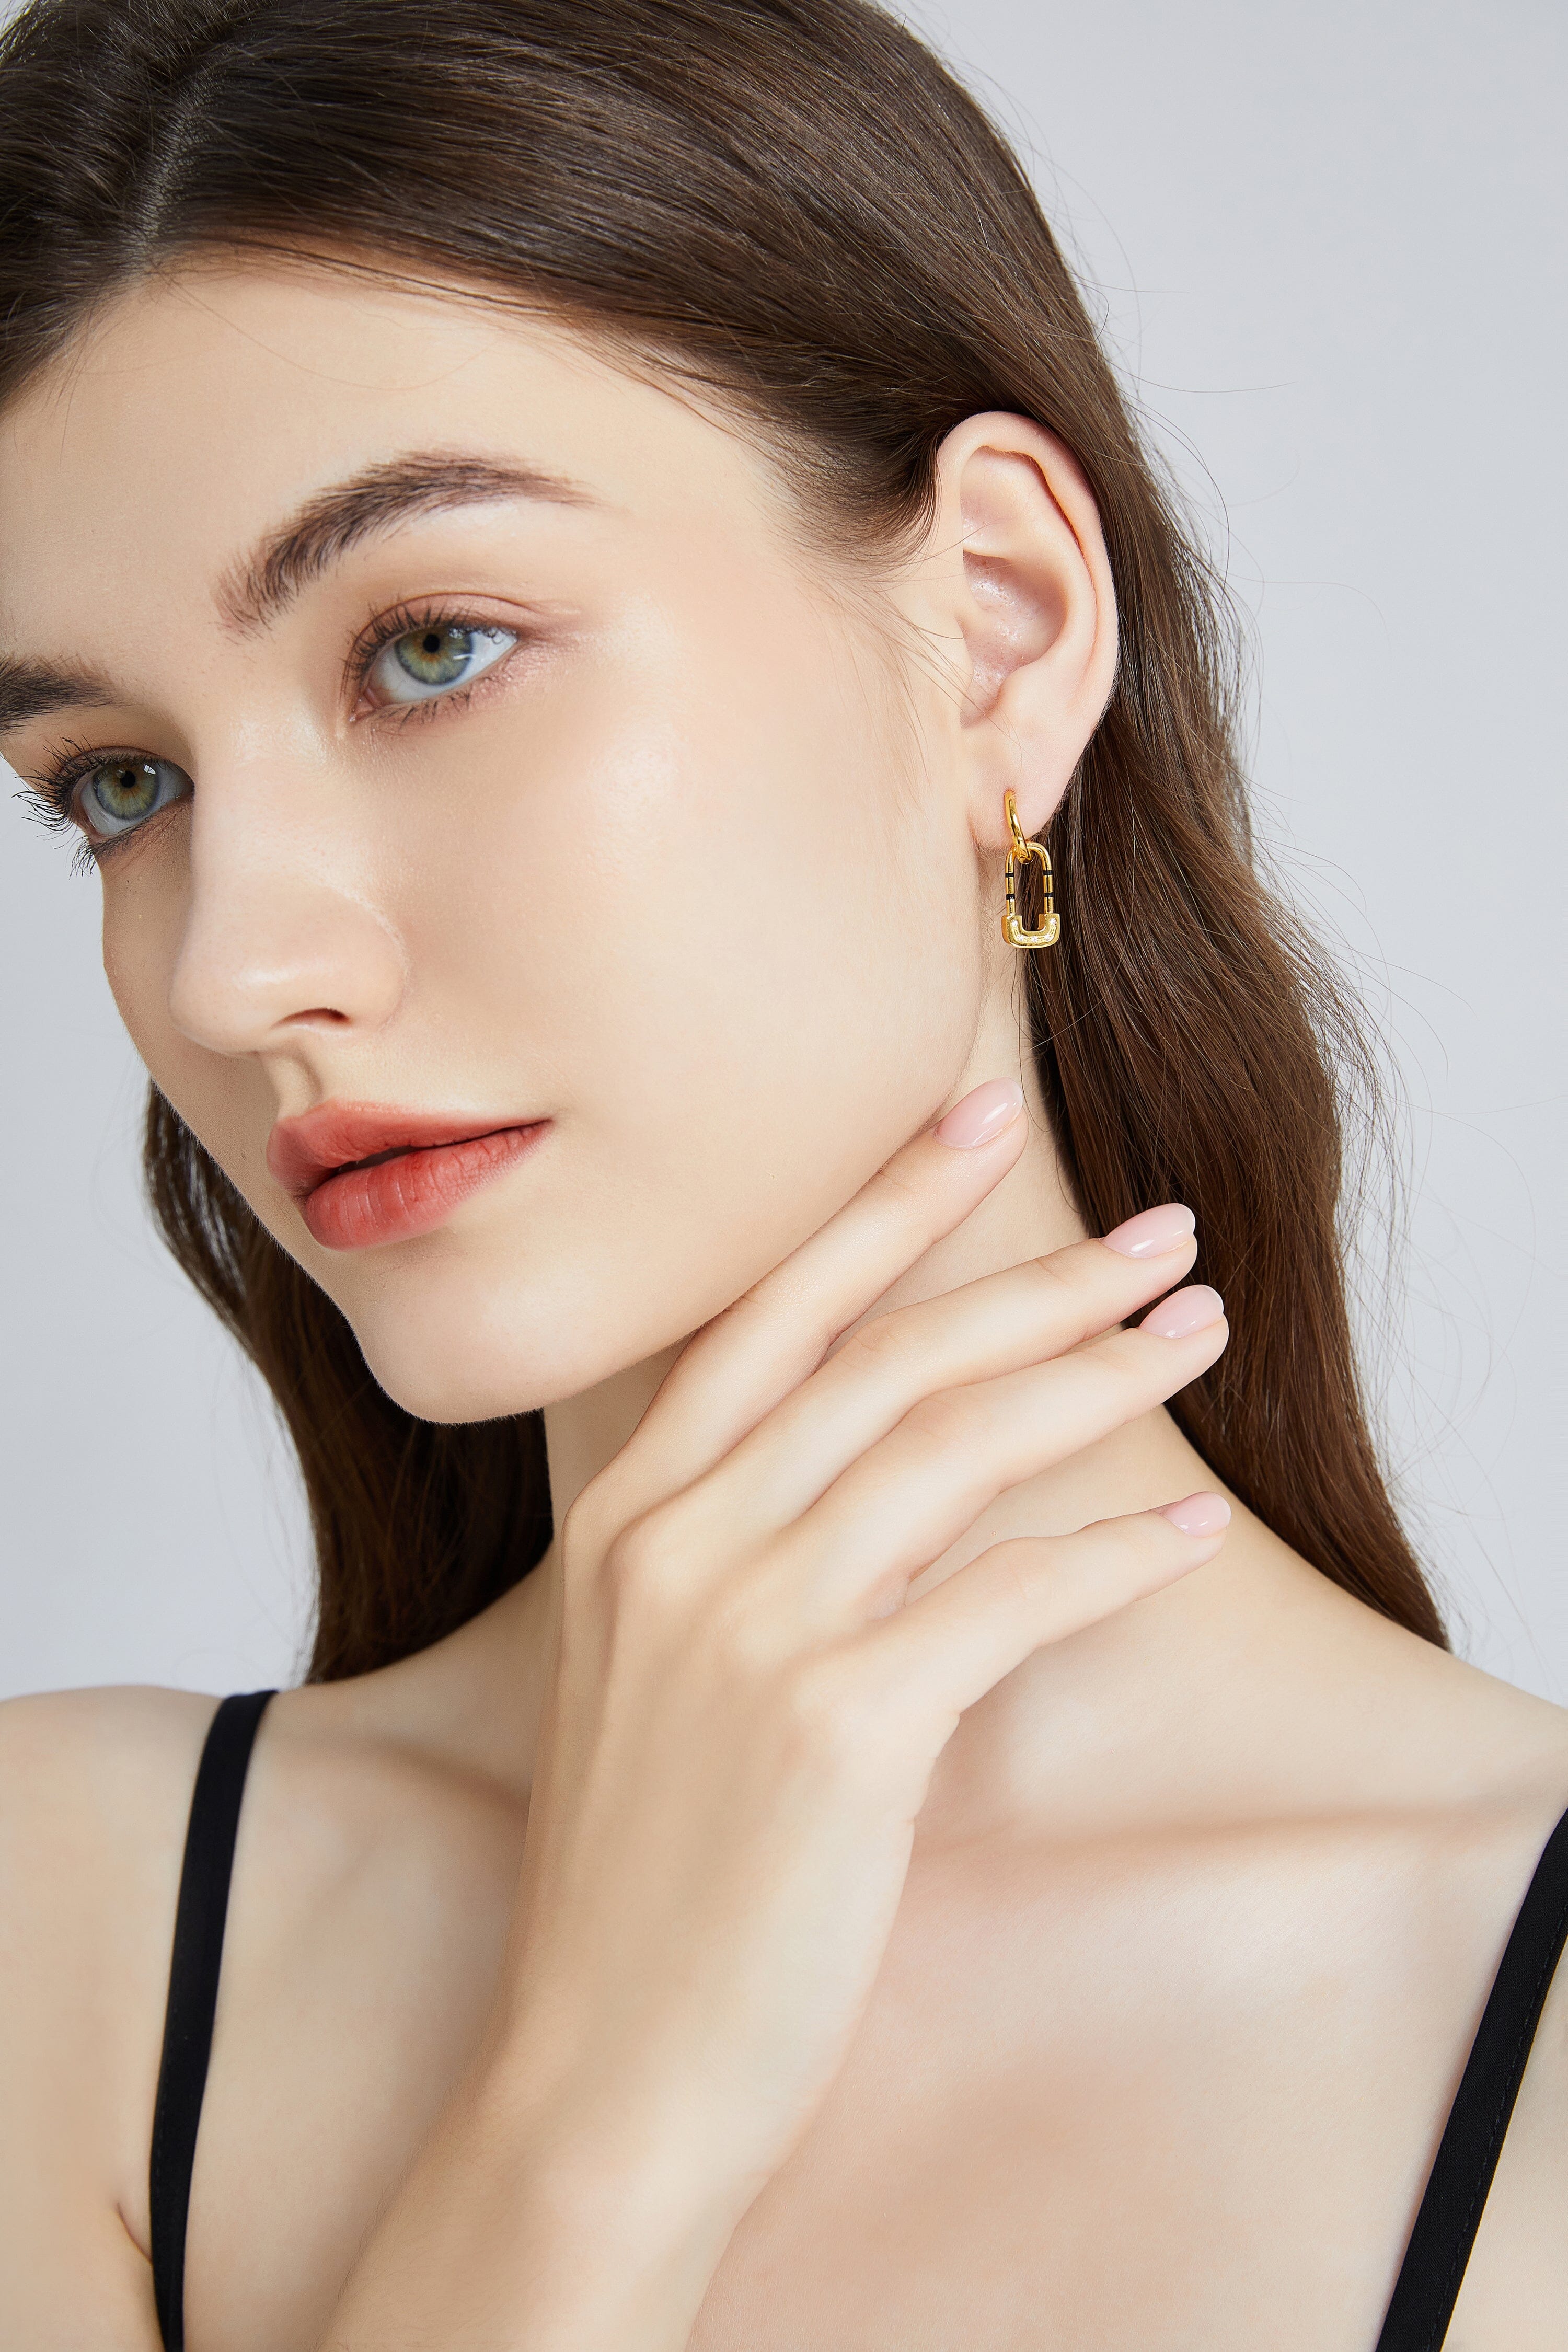 Gold Lock Earrings